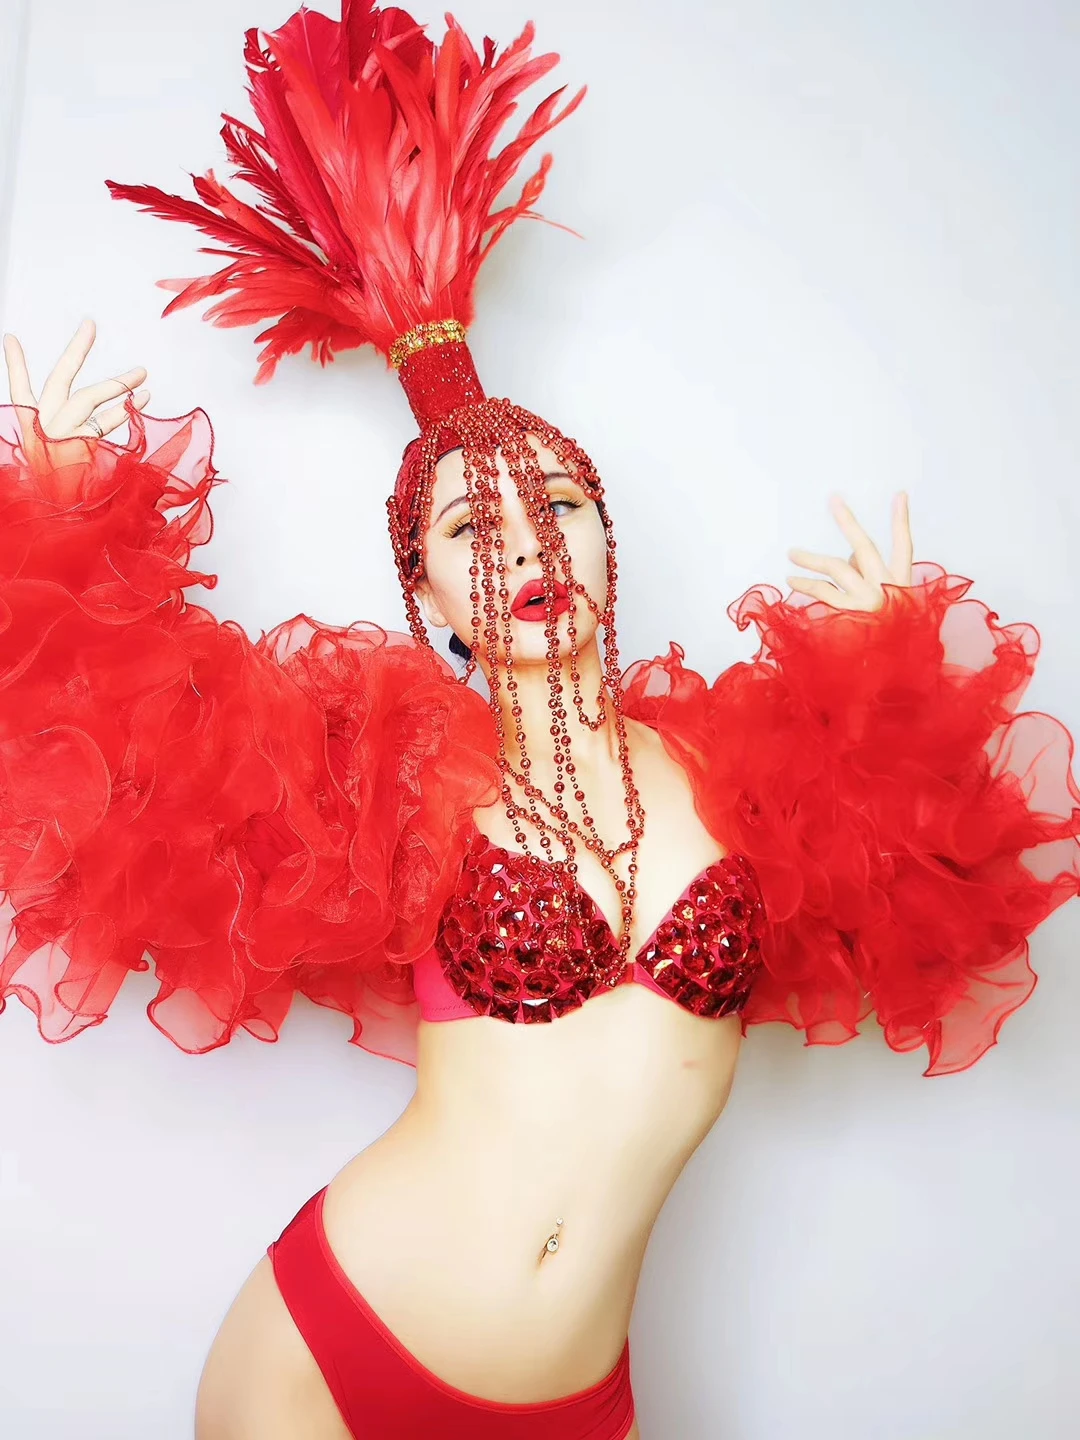 Сексуальный бикини с бисером длинный плащ красный перо стразы головной убор леди набор костюм для клуба мужской костюм для вечеринки